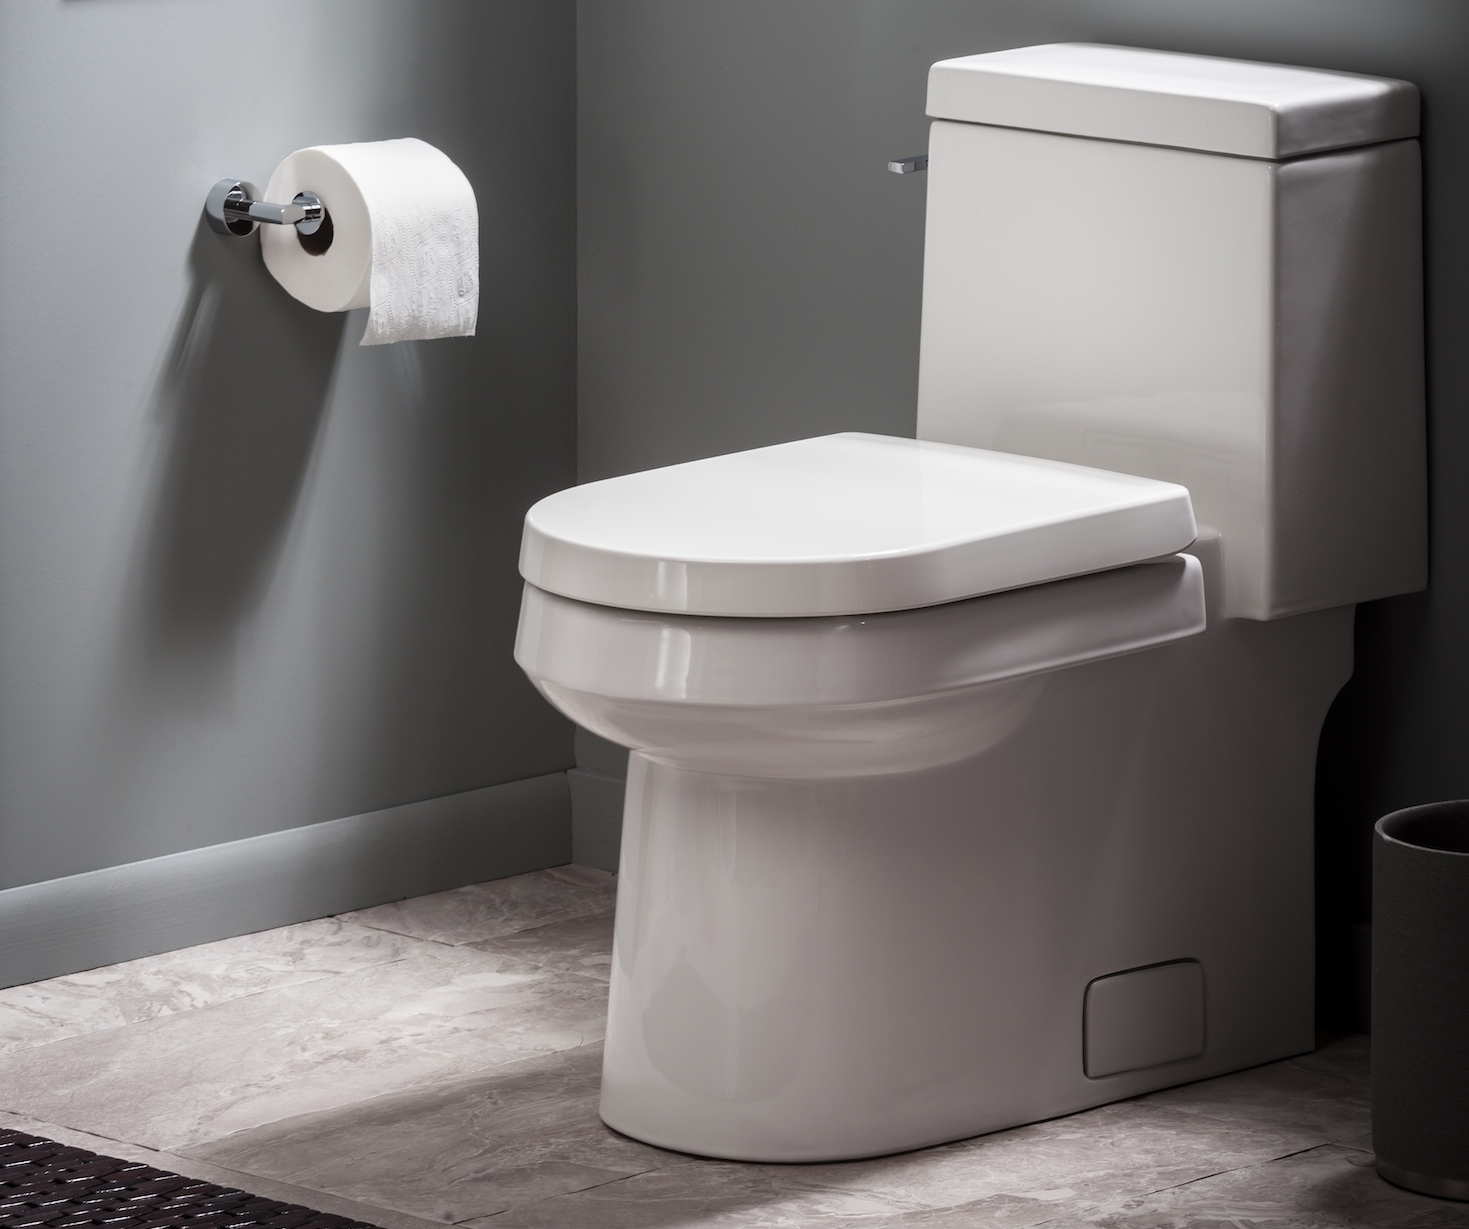 Gerber Plumbing Fixtures toilet